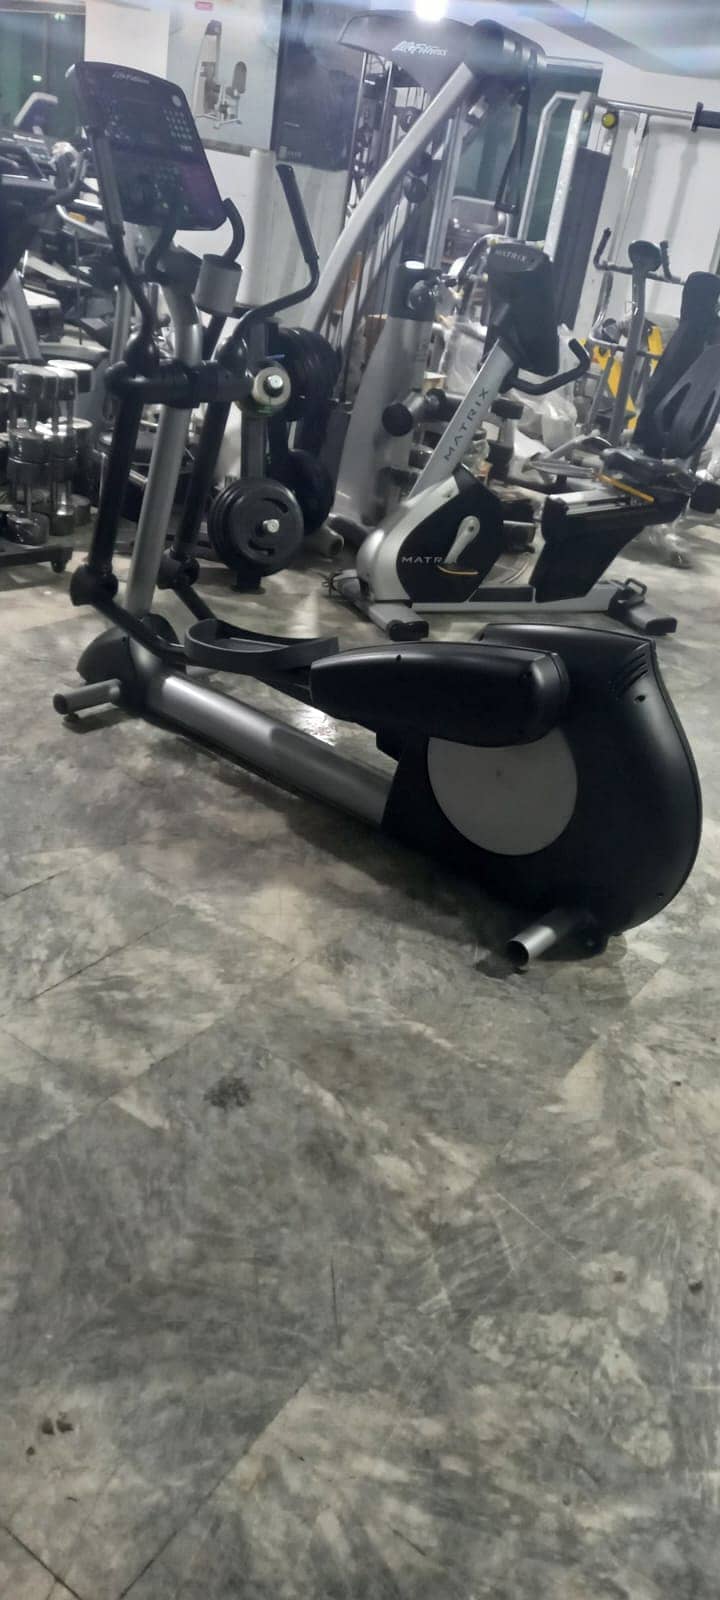 Life Fitness Treadmill,Elliptical ,Recumbent ,Upright bike ,Spin bike. 18